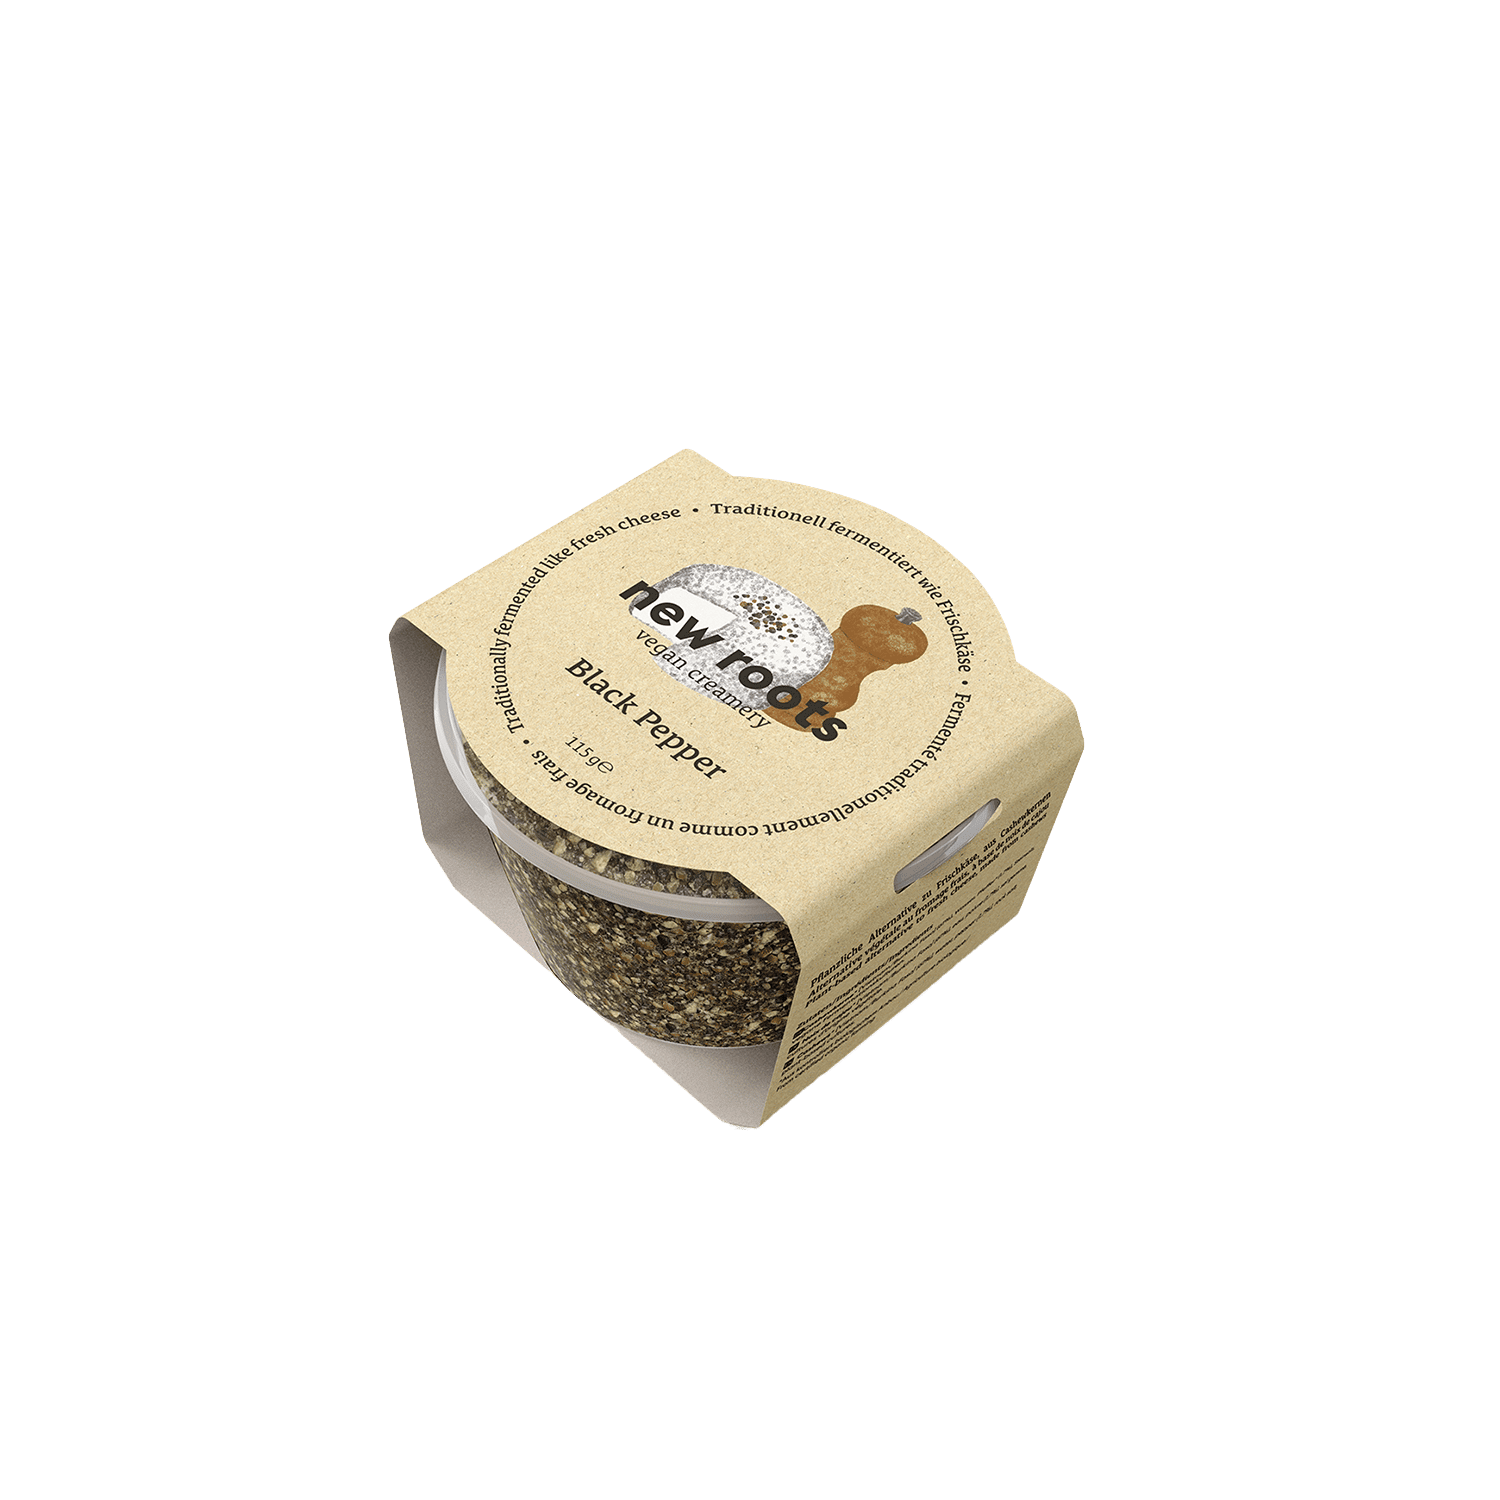 Vegan Creamery Schwarzer Pfeffer Alternative zu Frischkäse, BIO, 115g